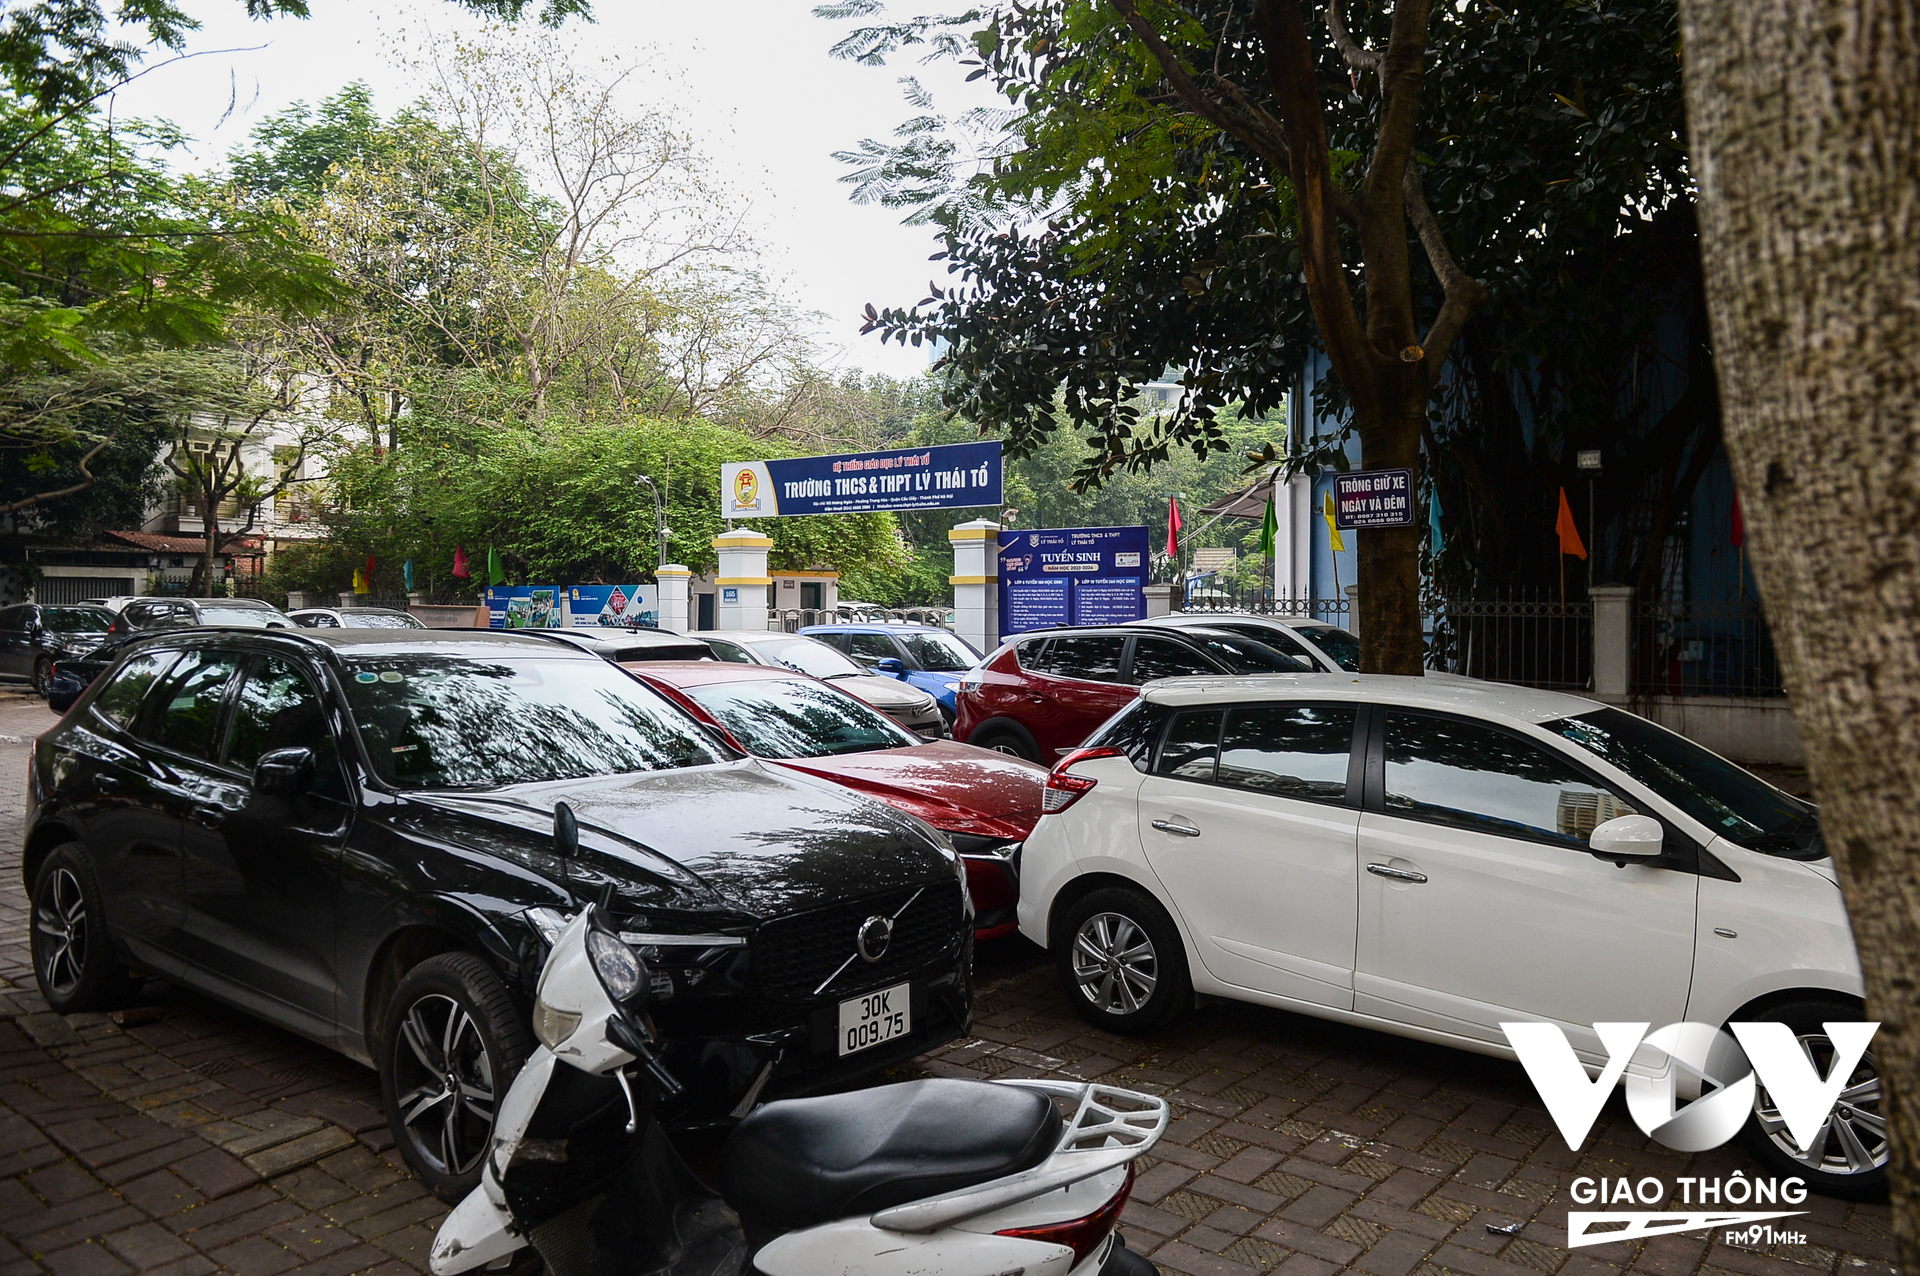 Vỉa hè khu vực cổng trường THCS & THPT Lý Thái Tổ cũng có rất nhiều xe ô tô đỗ.